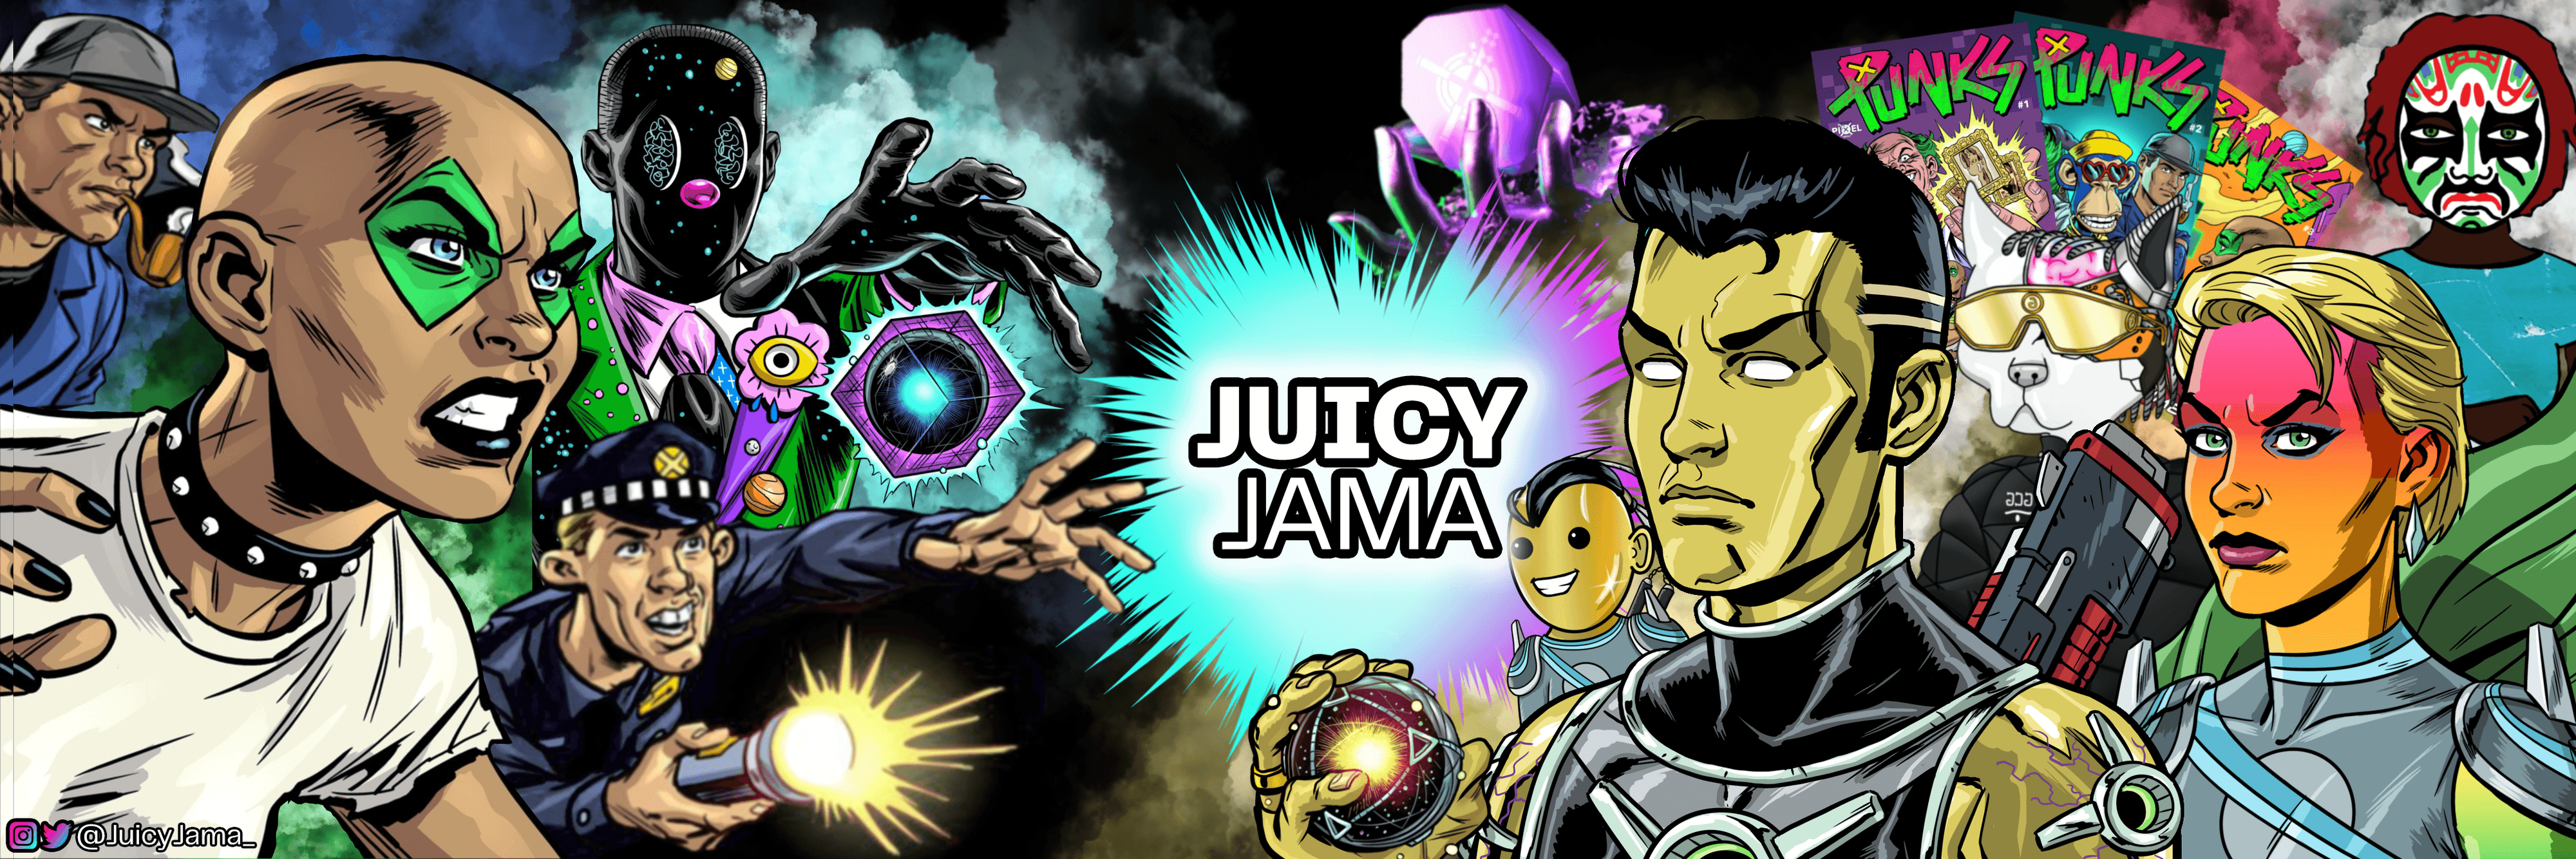 JuicyJama banner